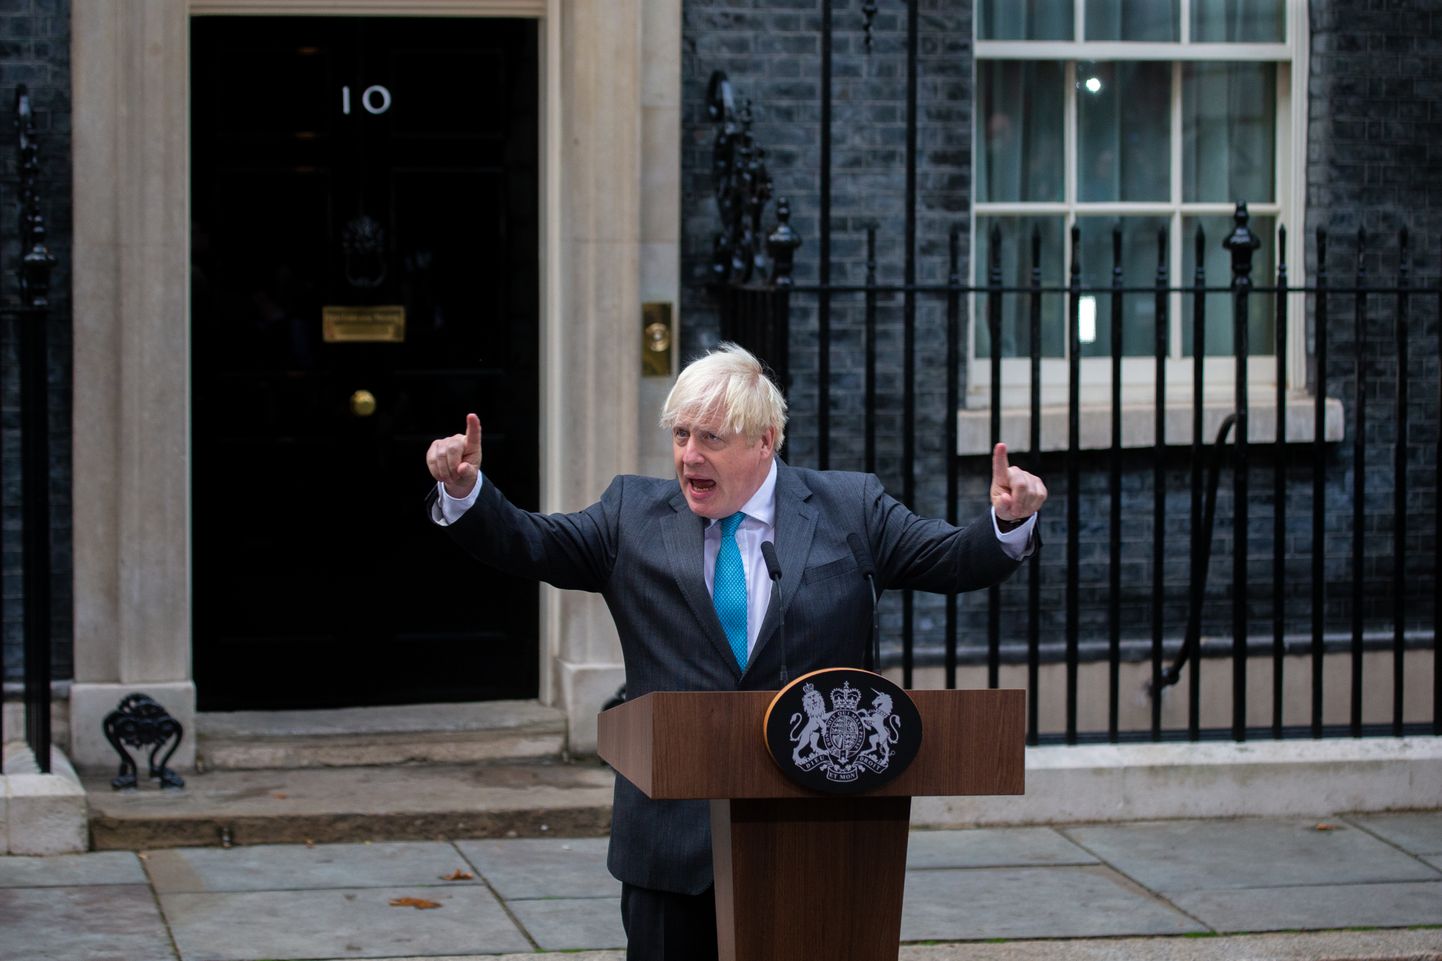 Briti lahkunud peaminister Boris Johnson pidas 6. septembril Londonis peaministri residentsi Downing Street 10 ees viimase kõne